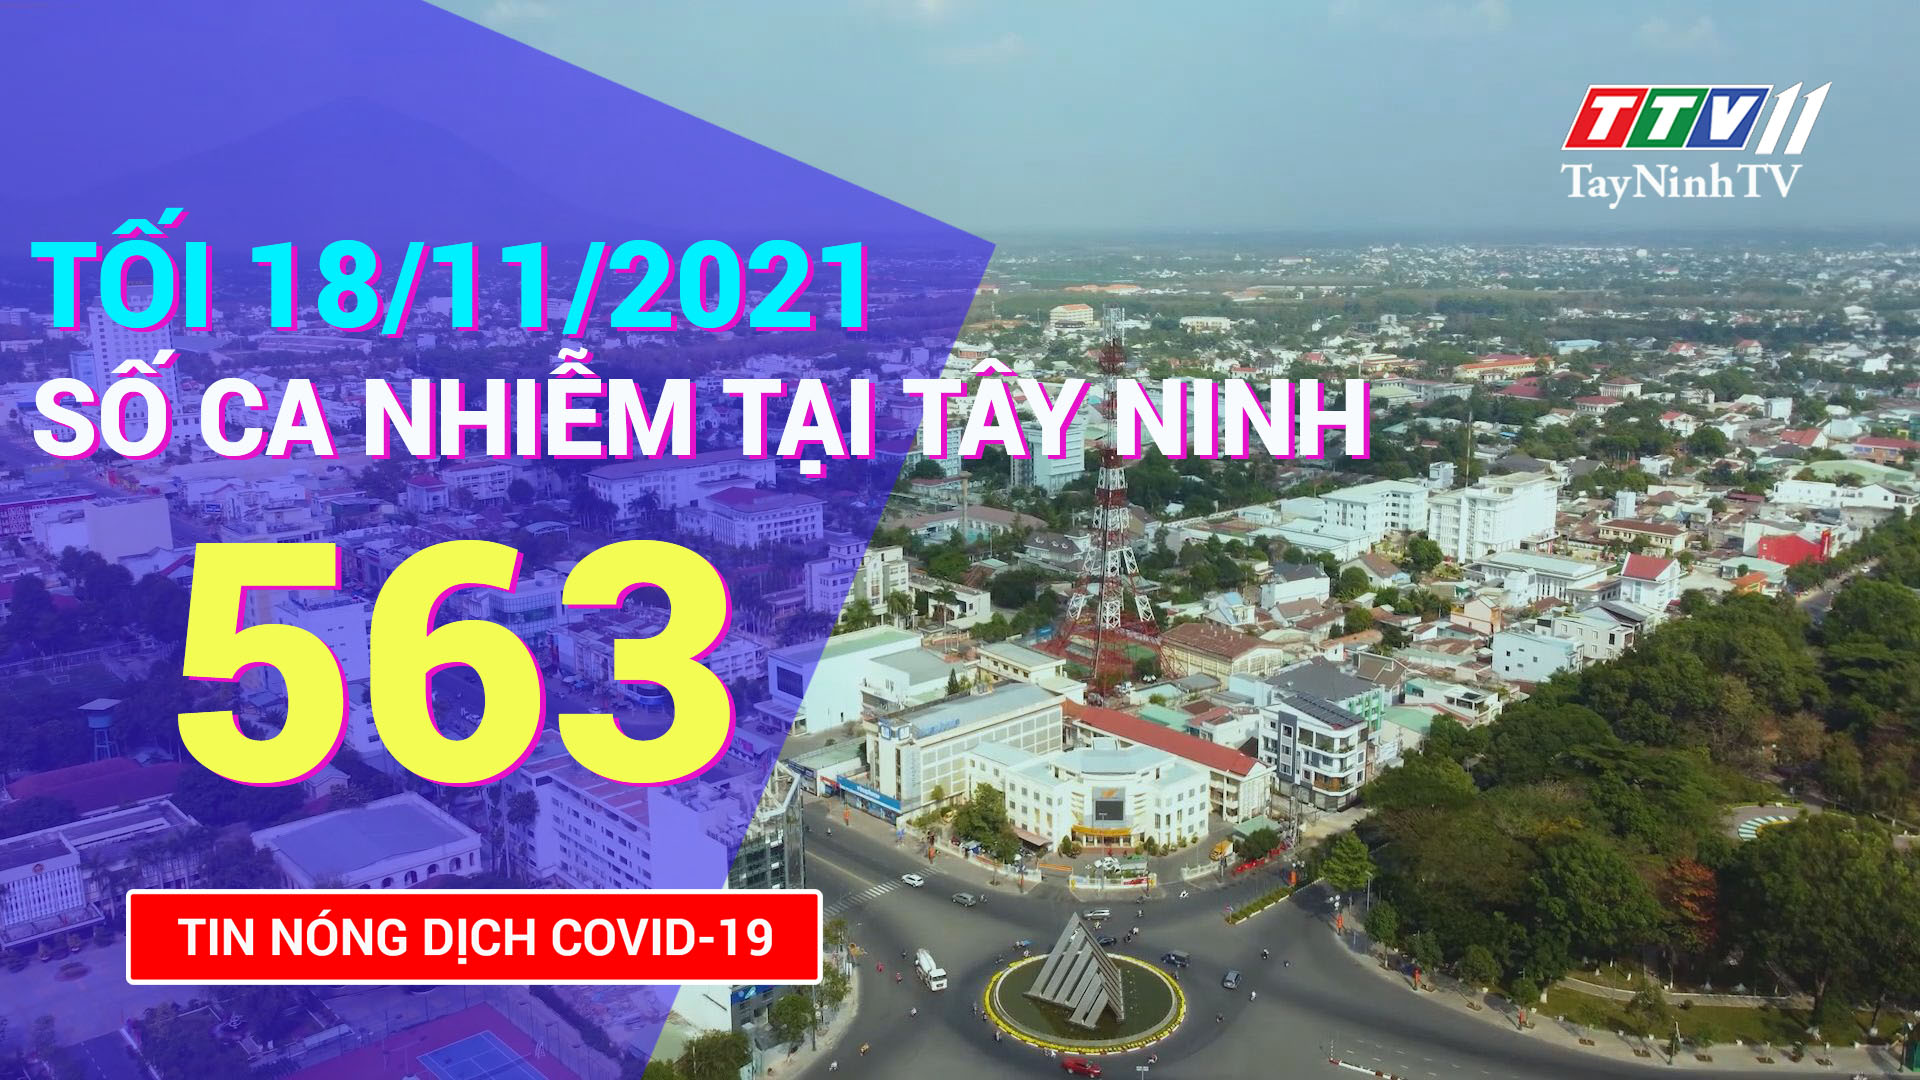 TIN TỨC COVID-19 TỐI 18/11/2021 | Tin tức hôm nay | TayNinhTV